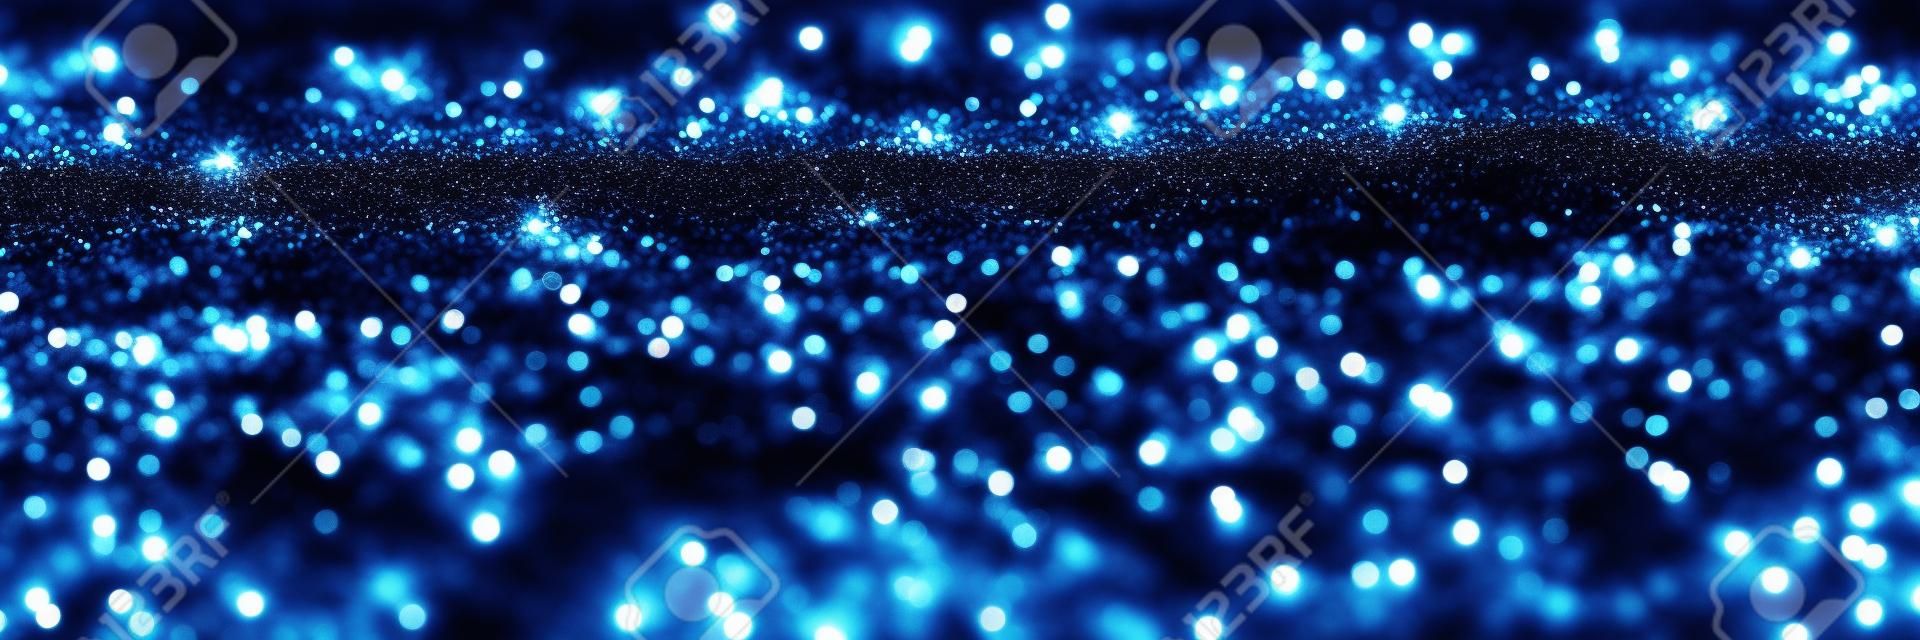 glitter vintage lights website banner background. blue, silver and black. defocused.